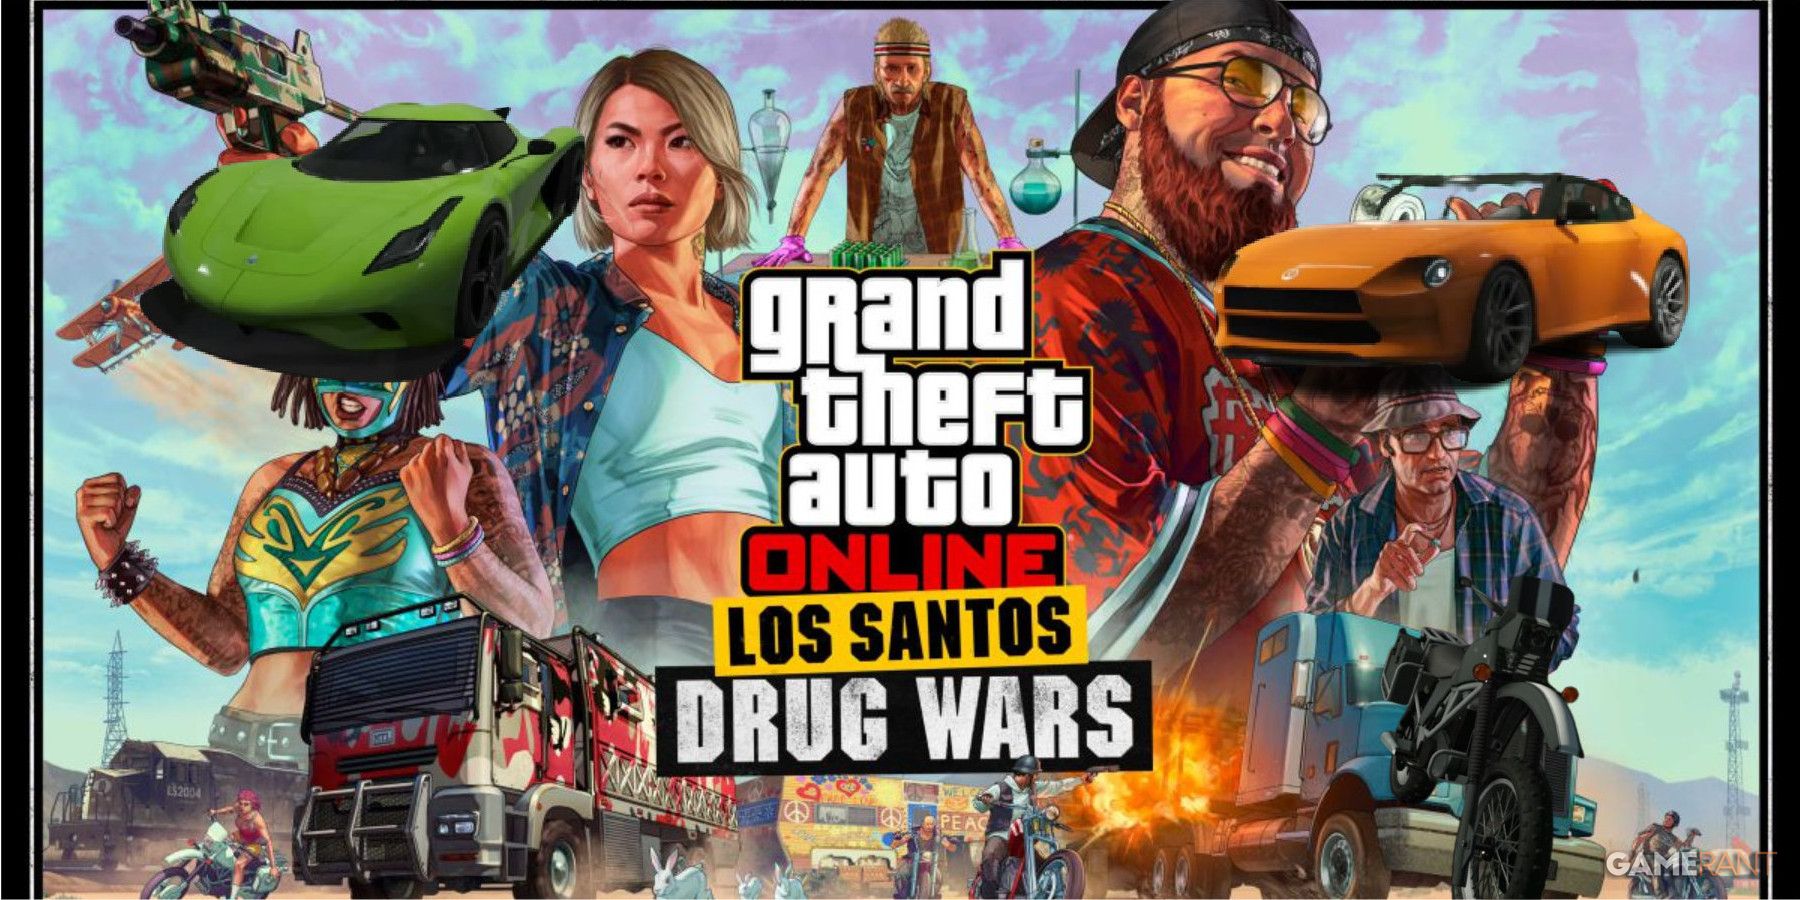 New GTA Online Content, Los Santos Drug Wars: The Last Dose is now